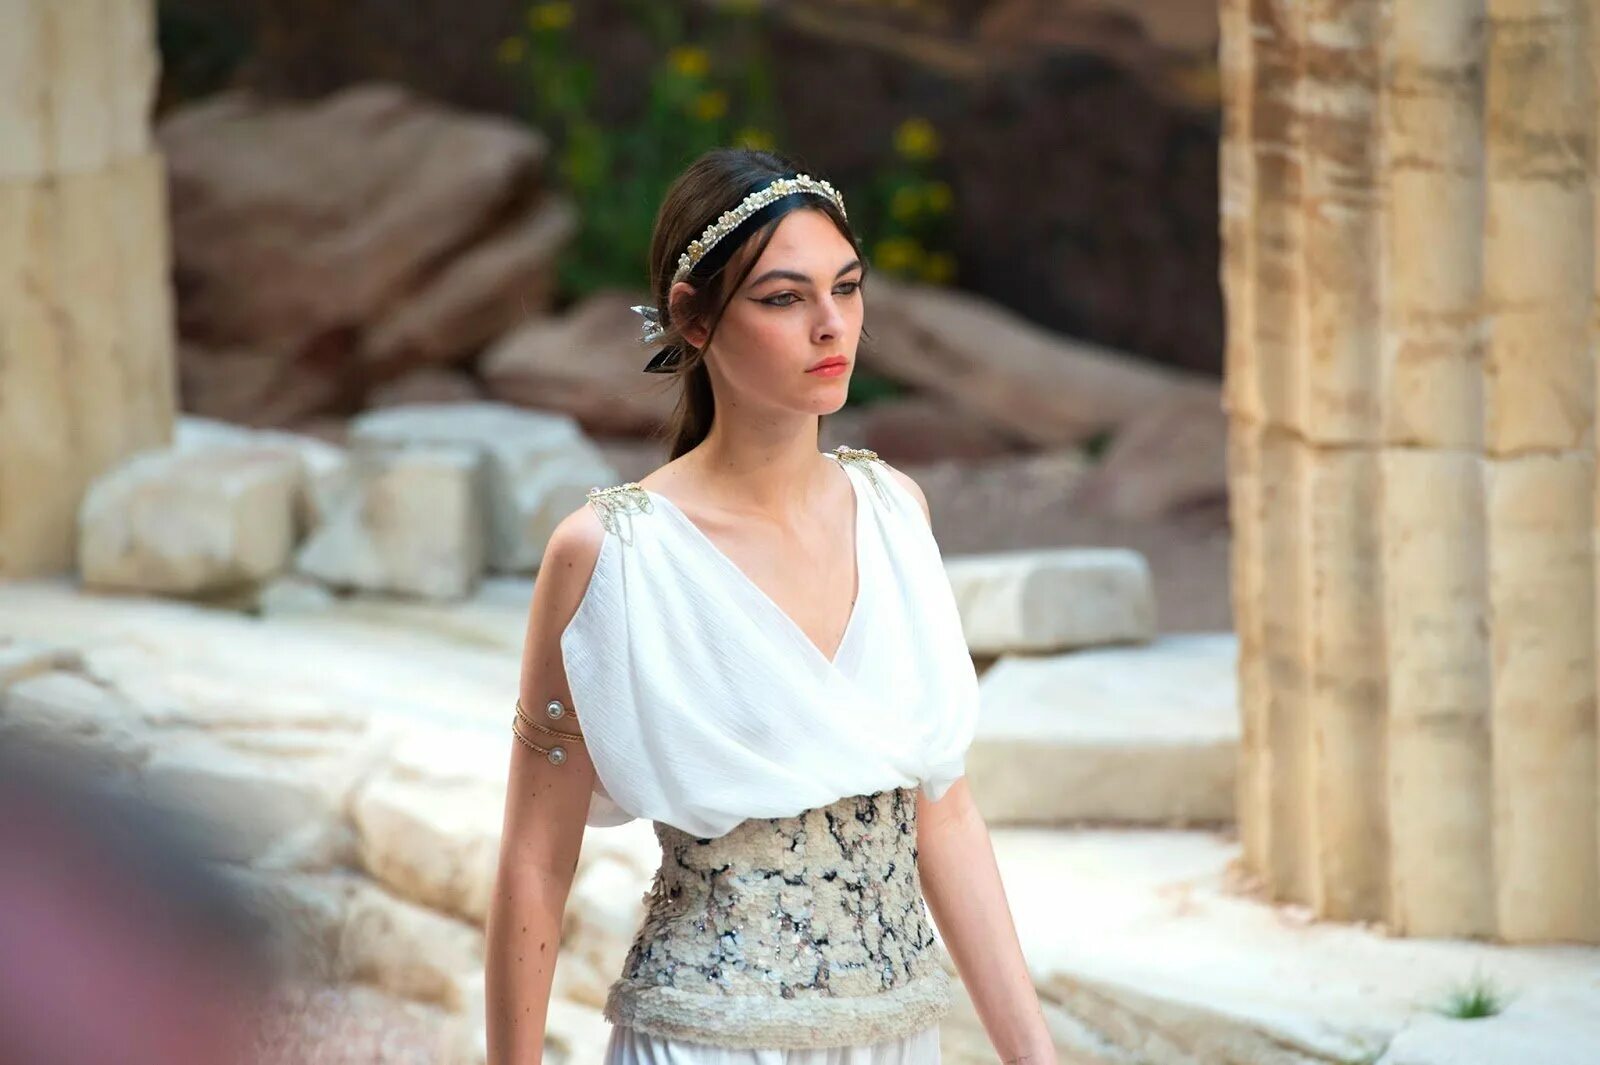 Греческие модели. Chanel Cruise 2018 древняя Греция. Фиби Греческая богиня. Греческий образ девушки. Фотосессия в греческом стиле.